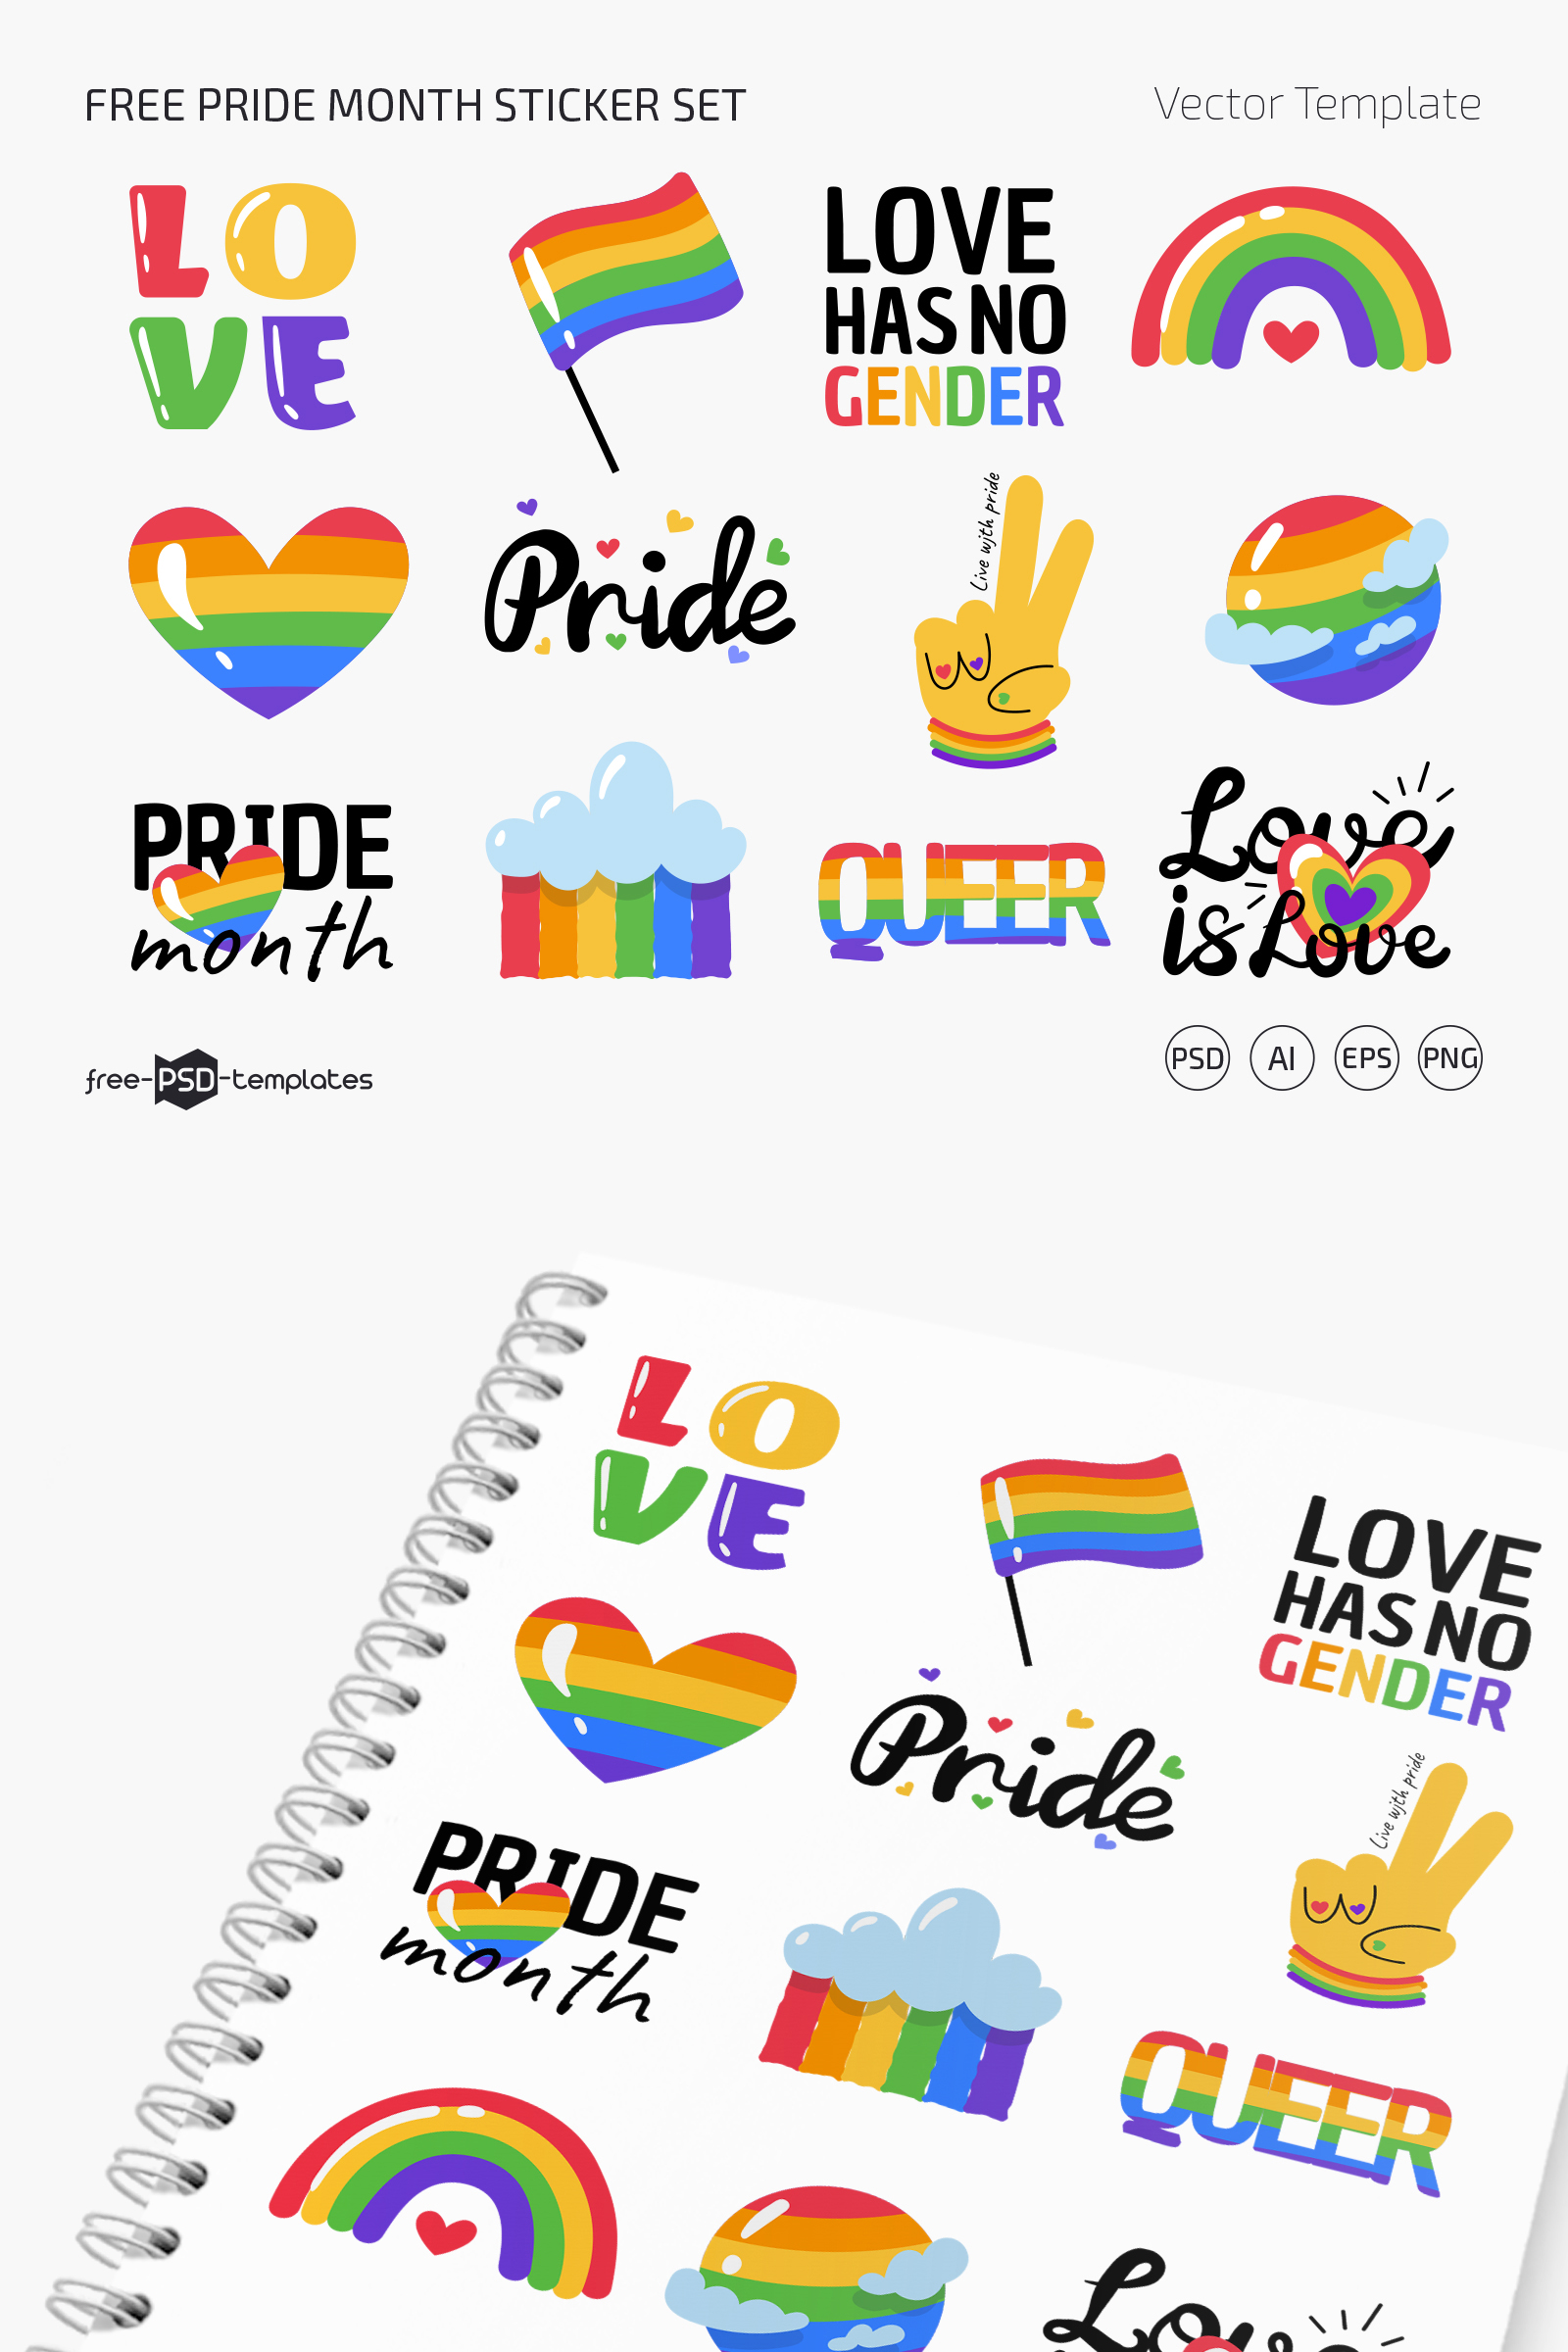 Web Pv Free Pride Month Sticker Set